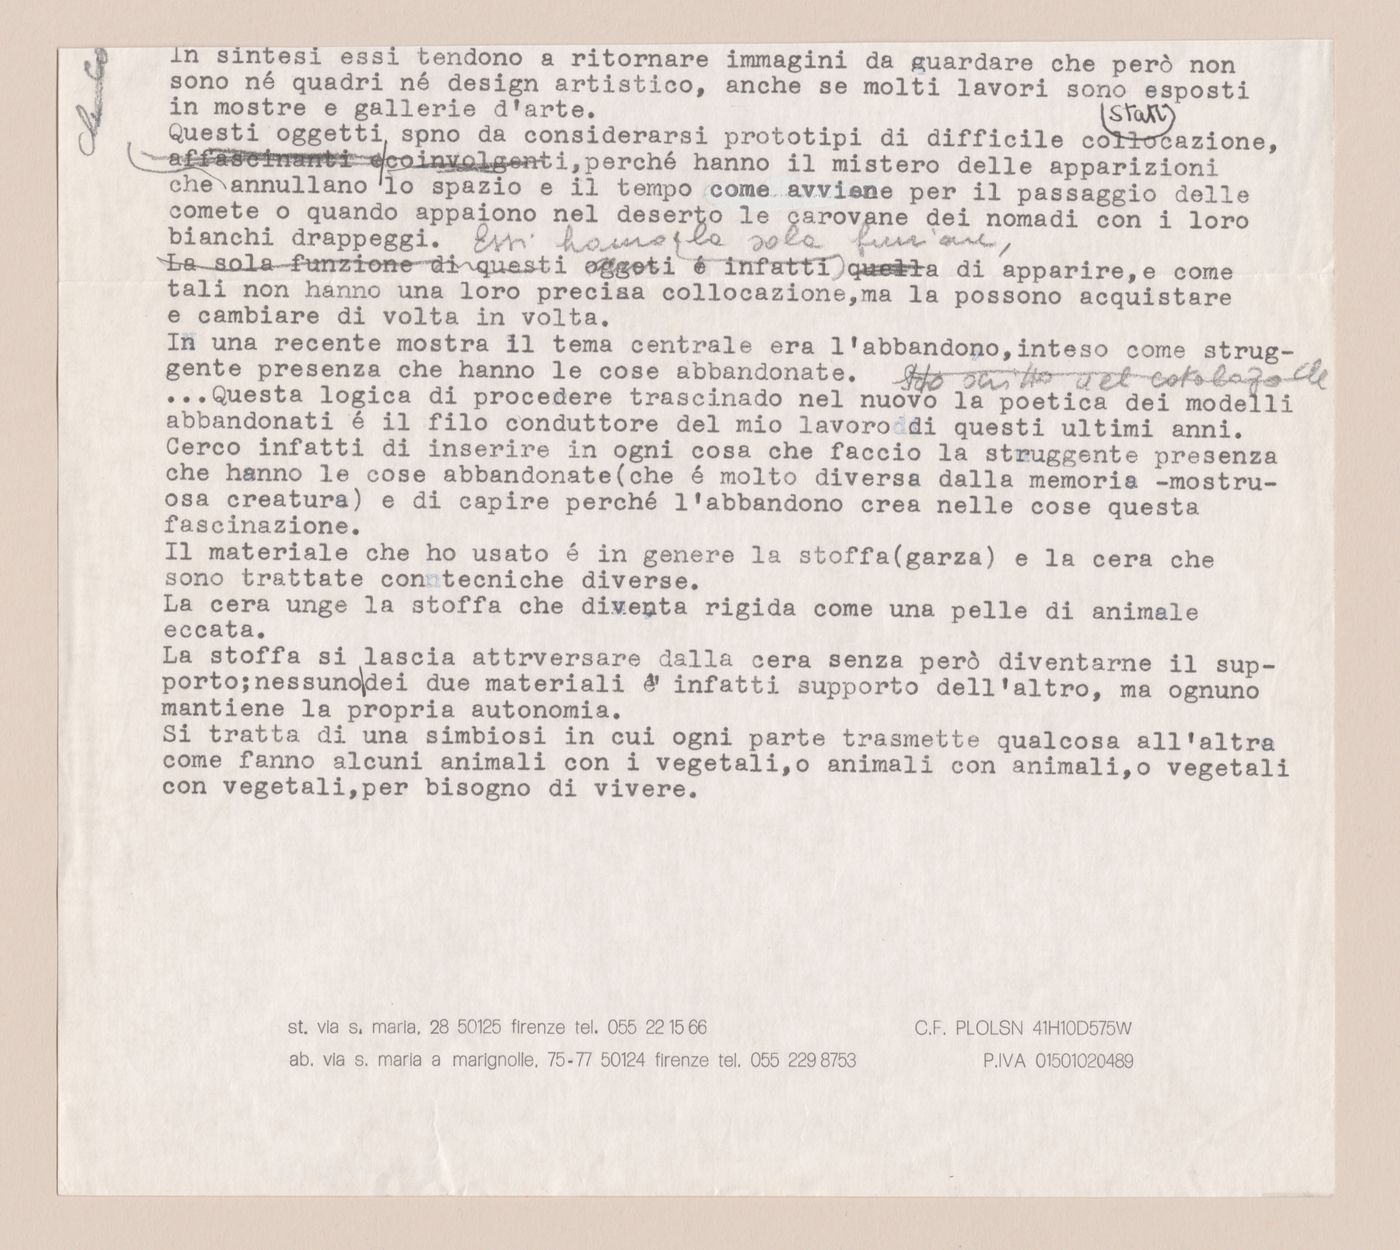 Fragment of a textual document with handwritten notes for La casa più bella di architettura del mondo [The most beautiful house in the world]